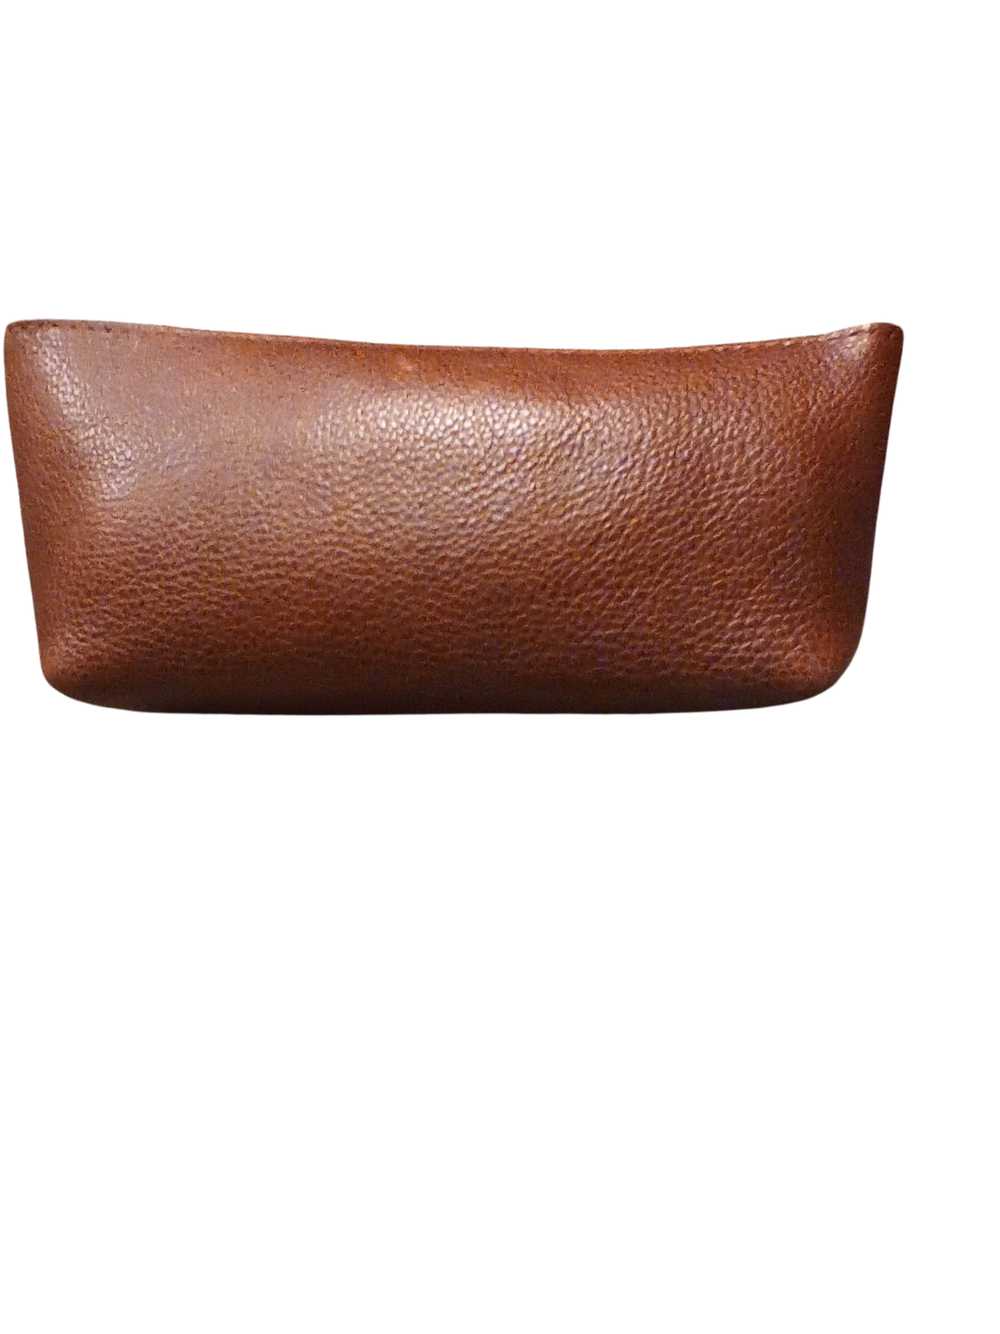 Portland Leather Nutmeg Utility Bag Premium - image 2